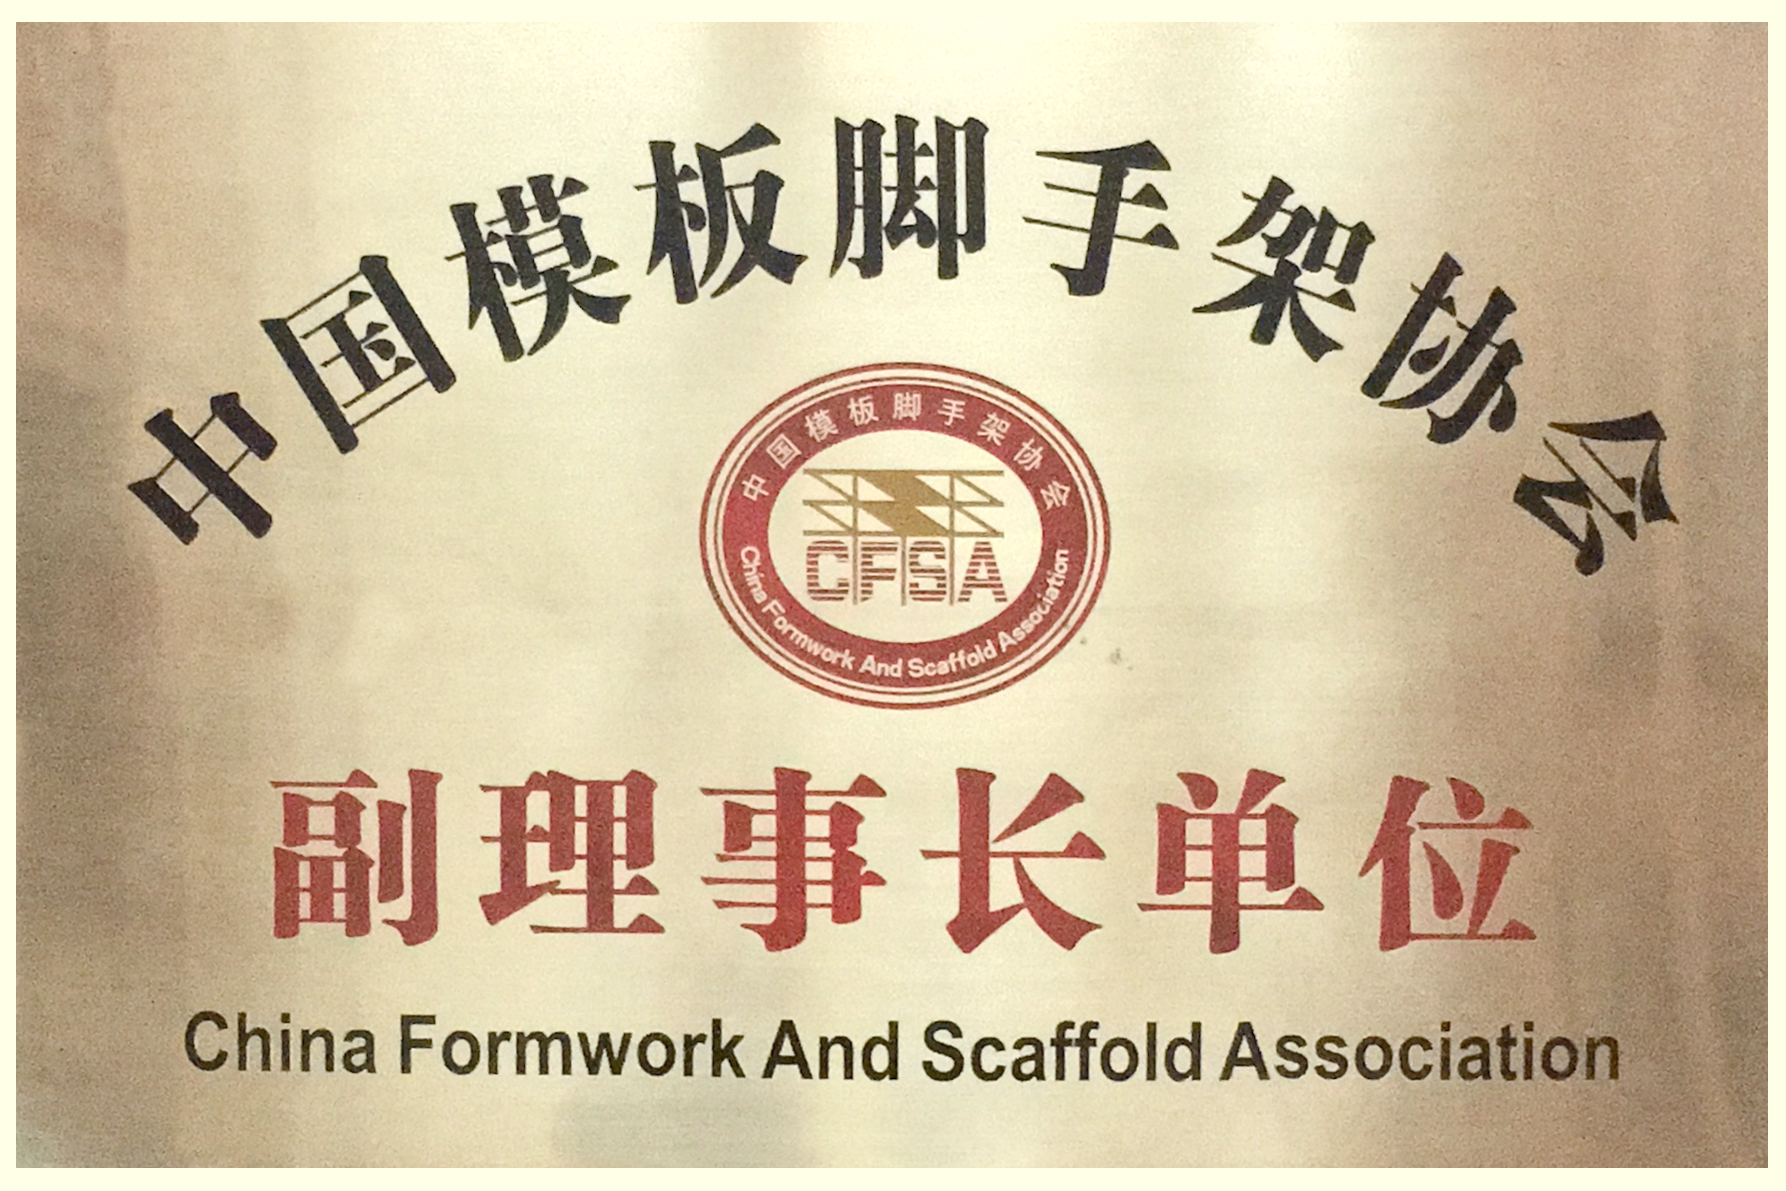 金亨木業有限公司被中國模架協會評為“副理事長單位”